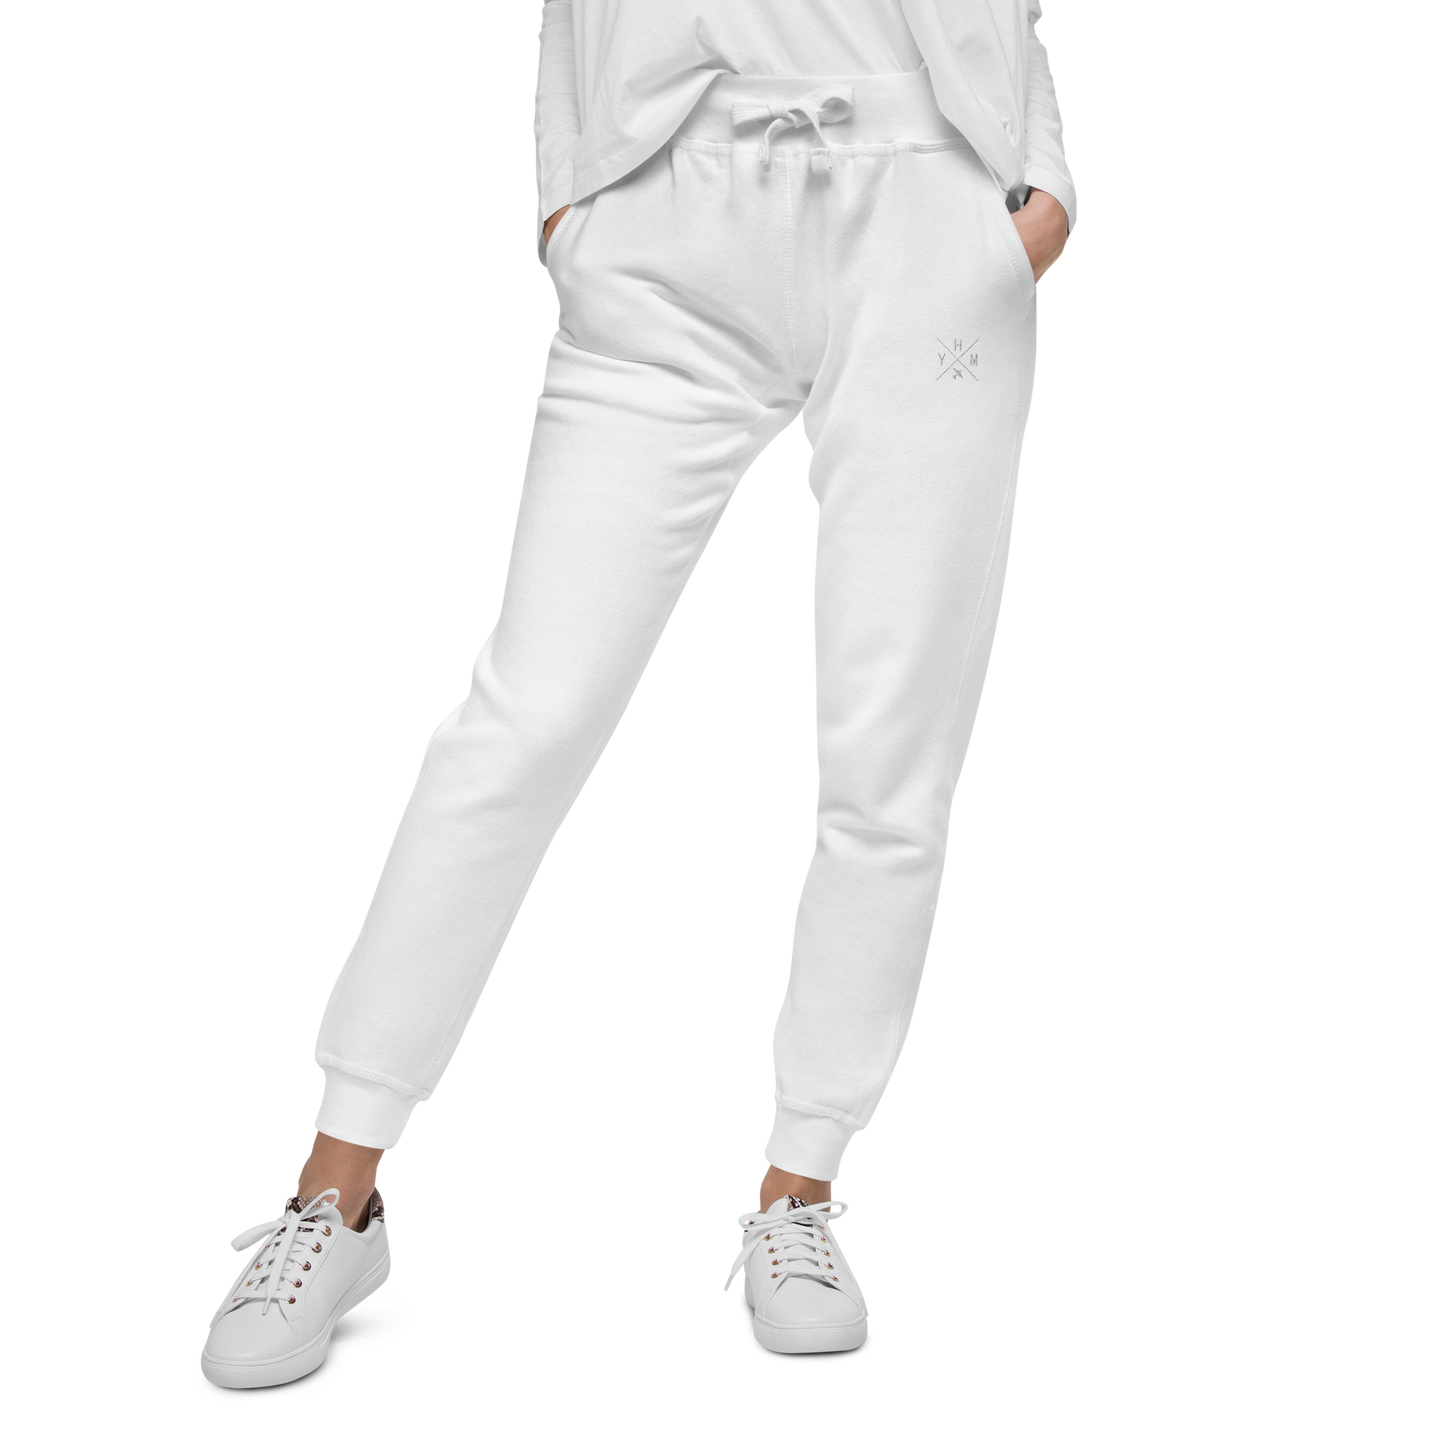 Crossed-X Unisex Fleece Sweatpants • White Embroidery